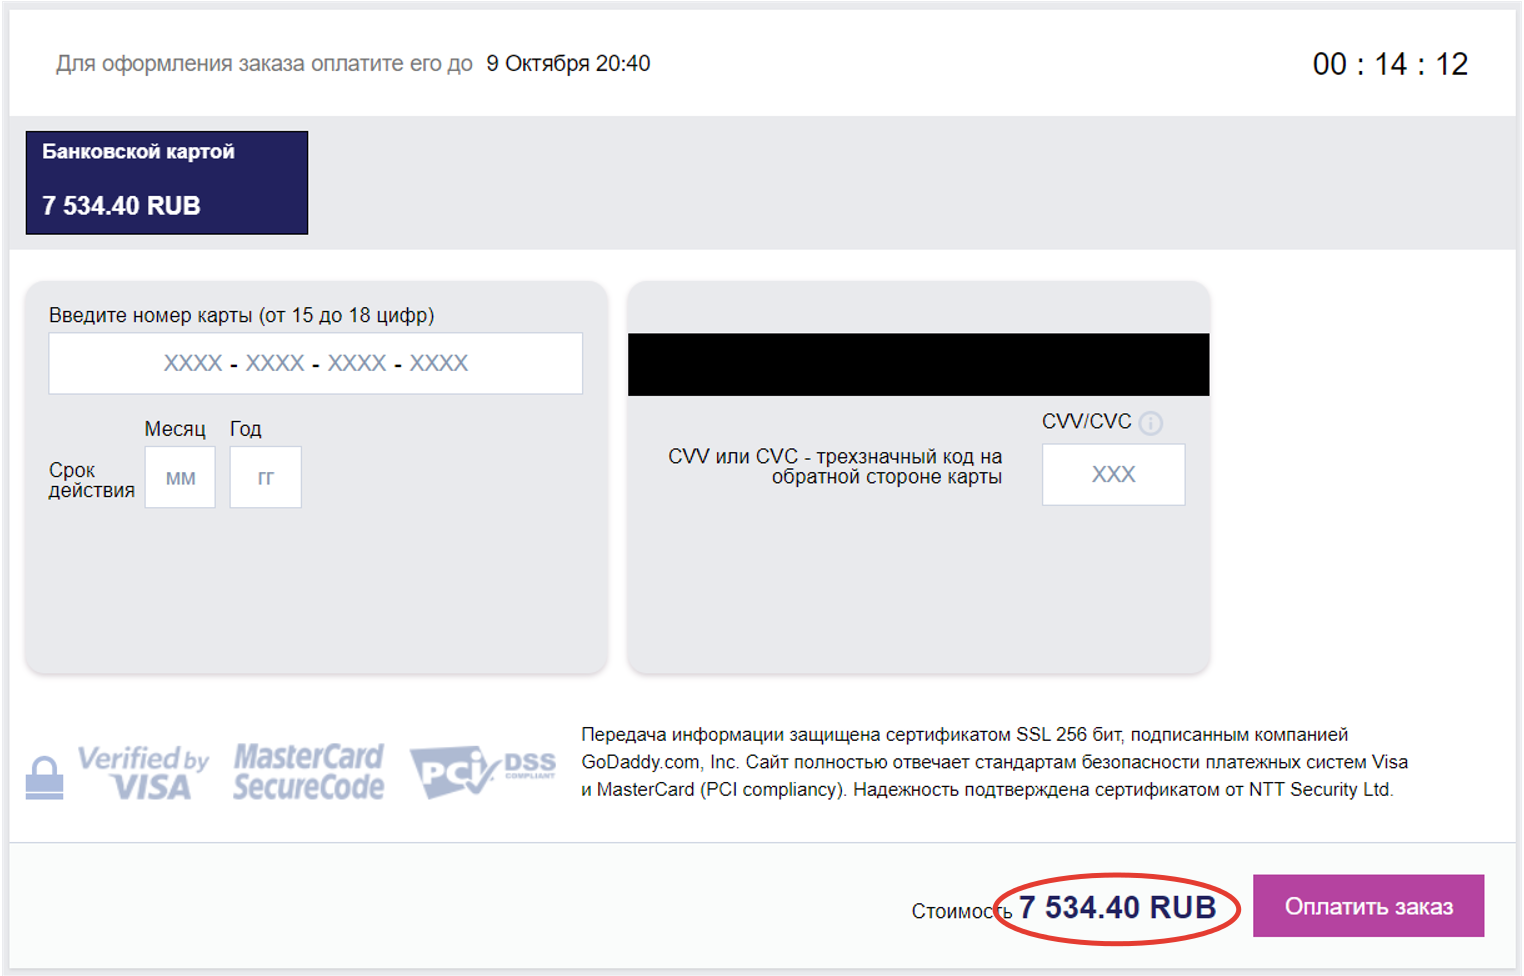 Скриншот окончательной стоимости билетов на поезд на ресурсе tickets.ru.